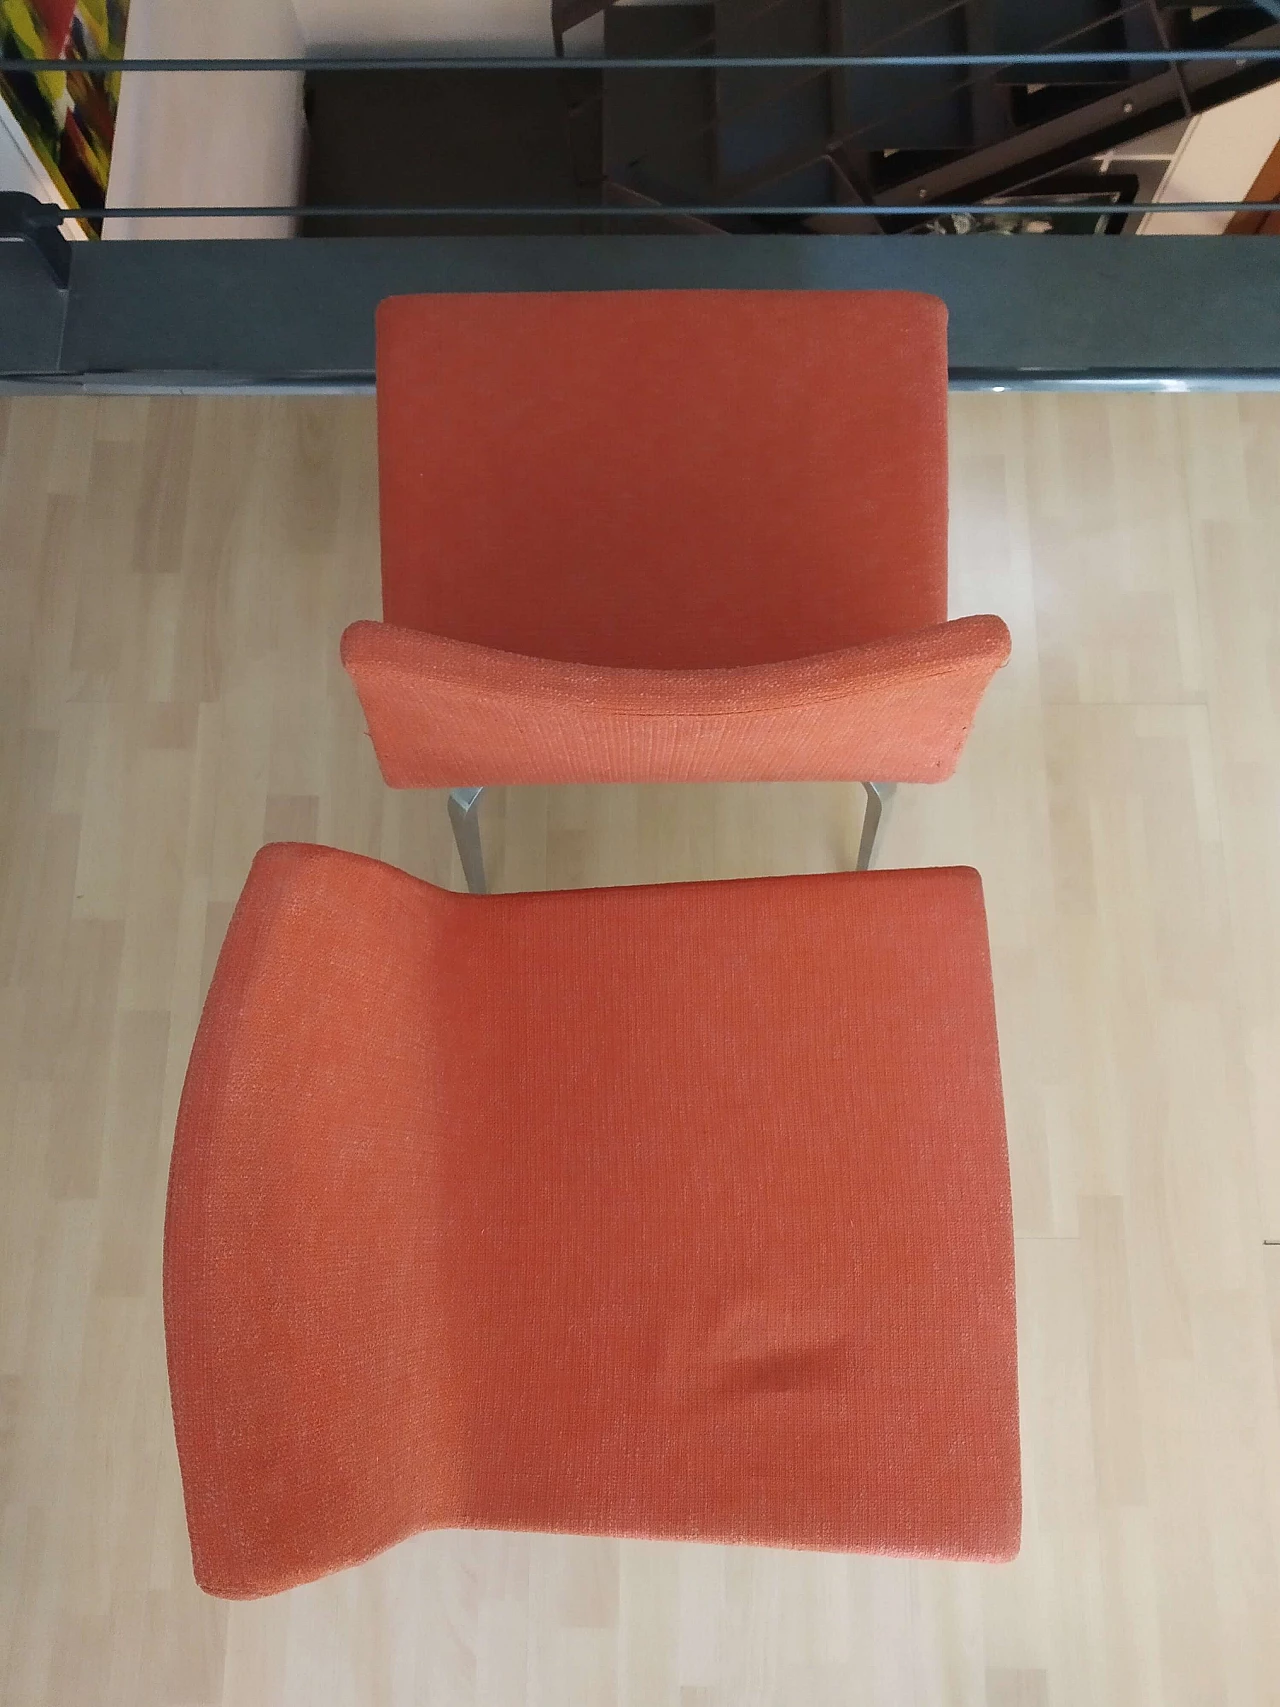 4 Hella Chairs by Mauro Lipparini for MisuraEmme 1477298